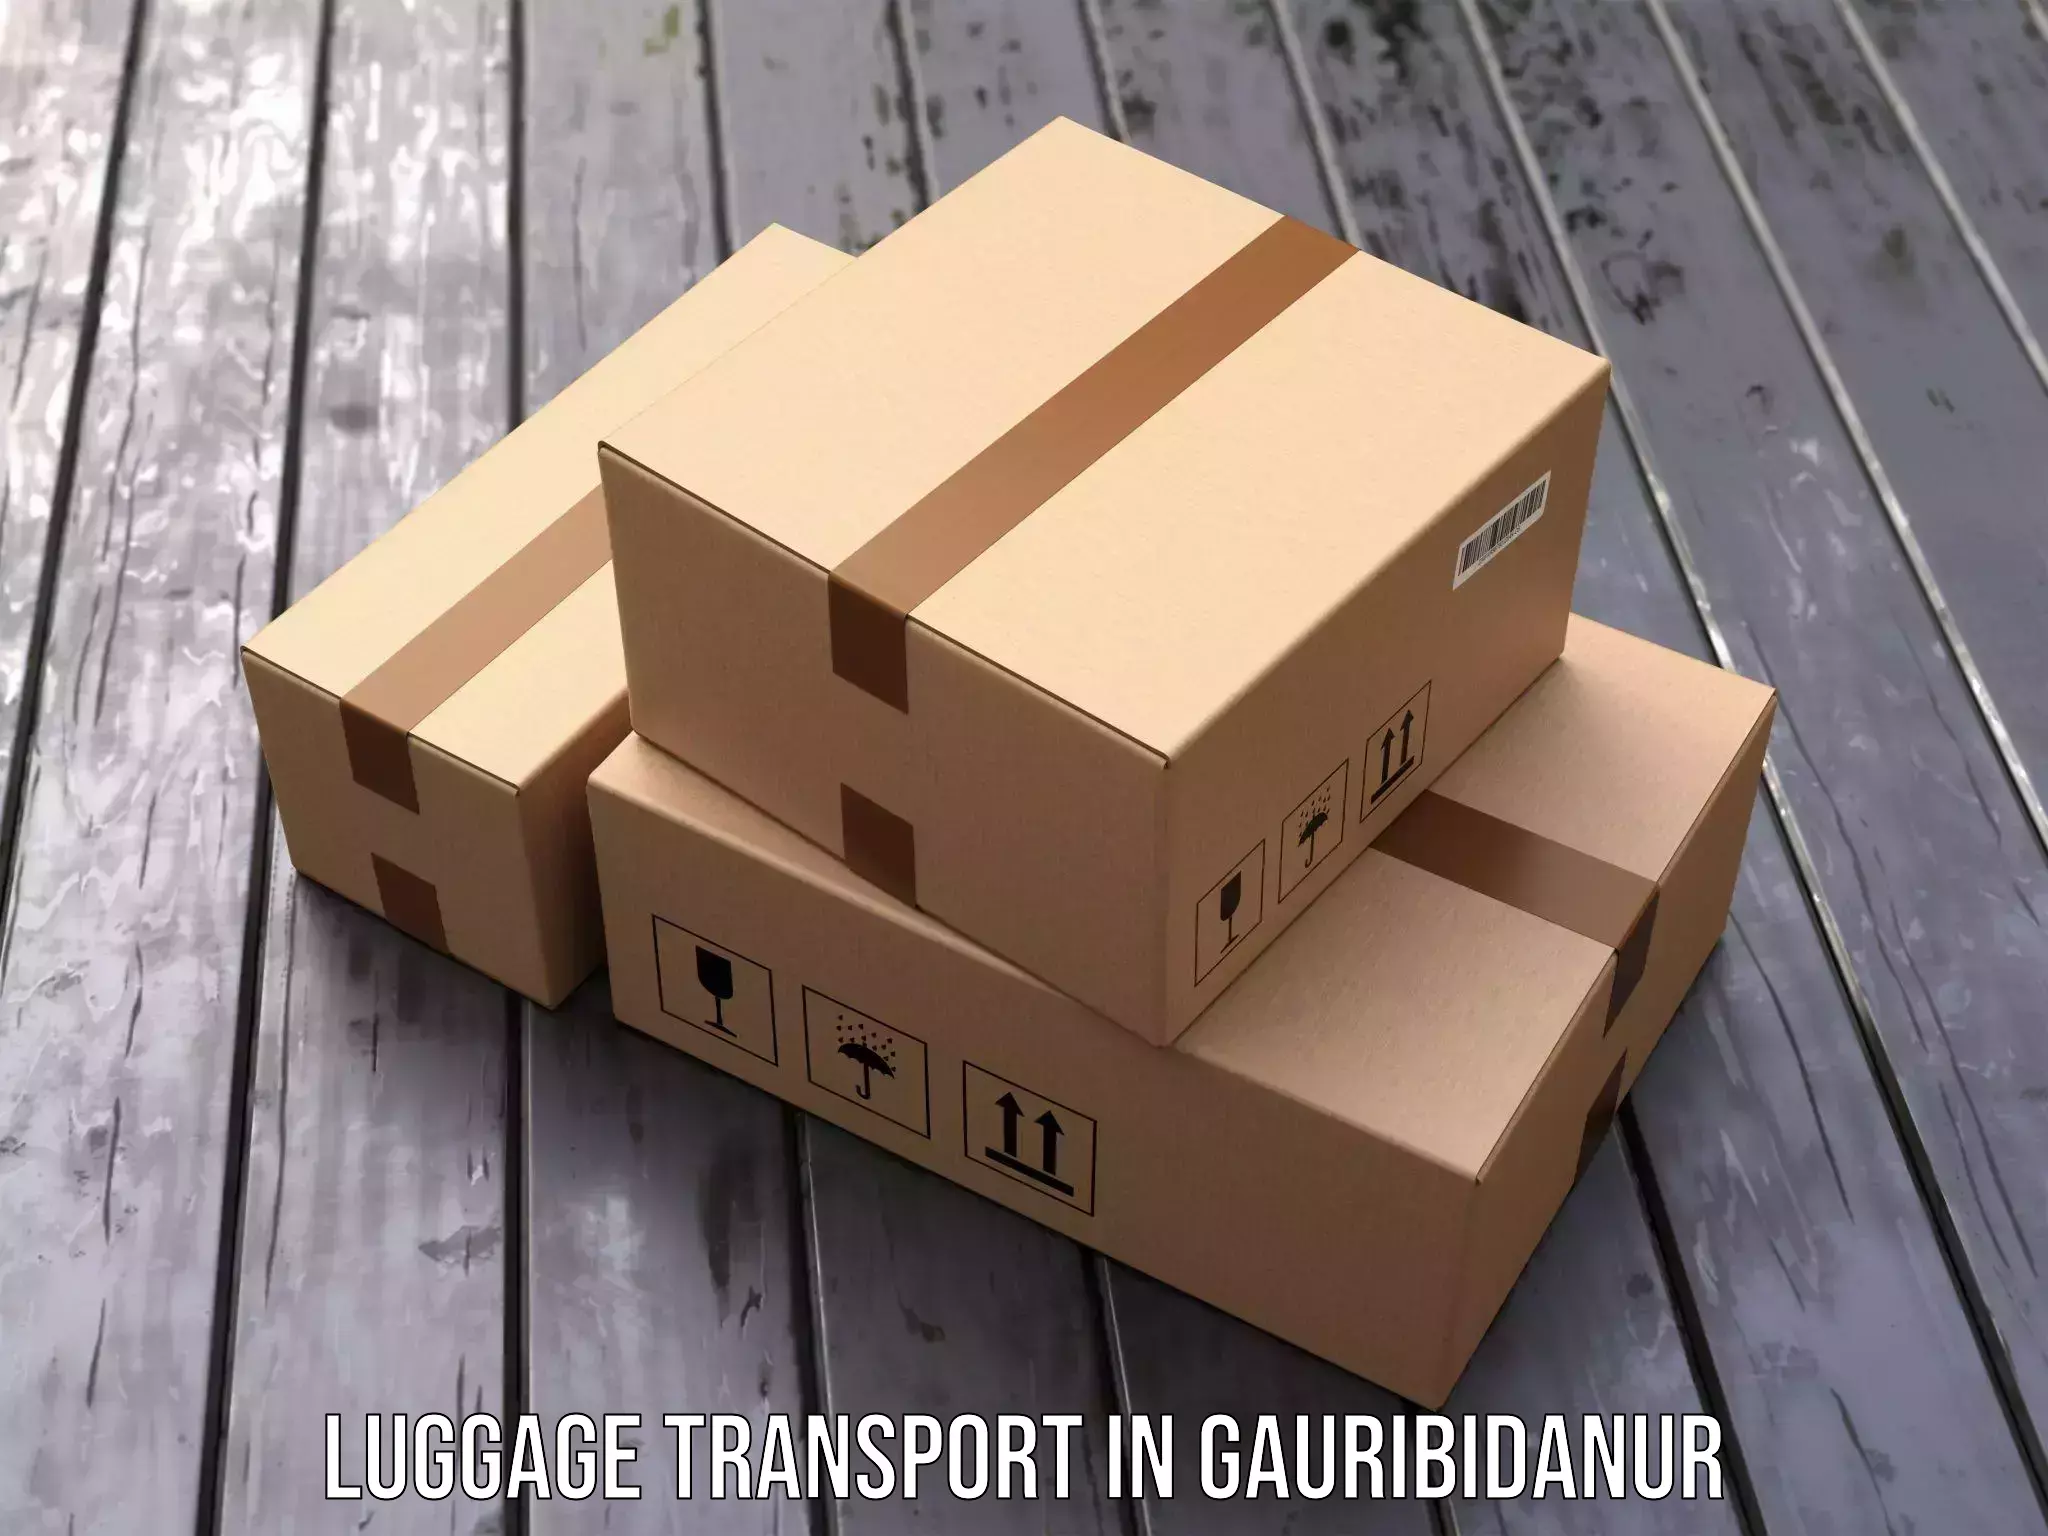 Luggage shipping efficiency in Gauribidanur